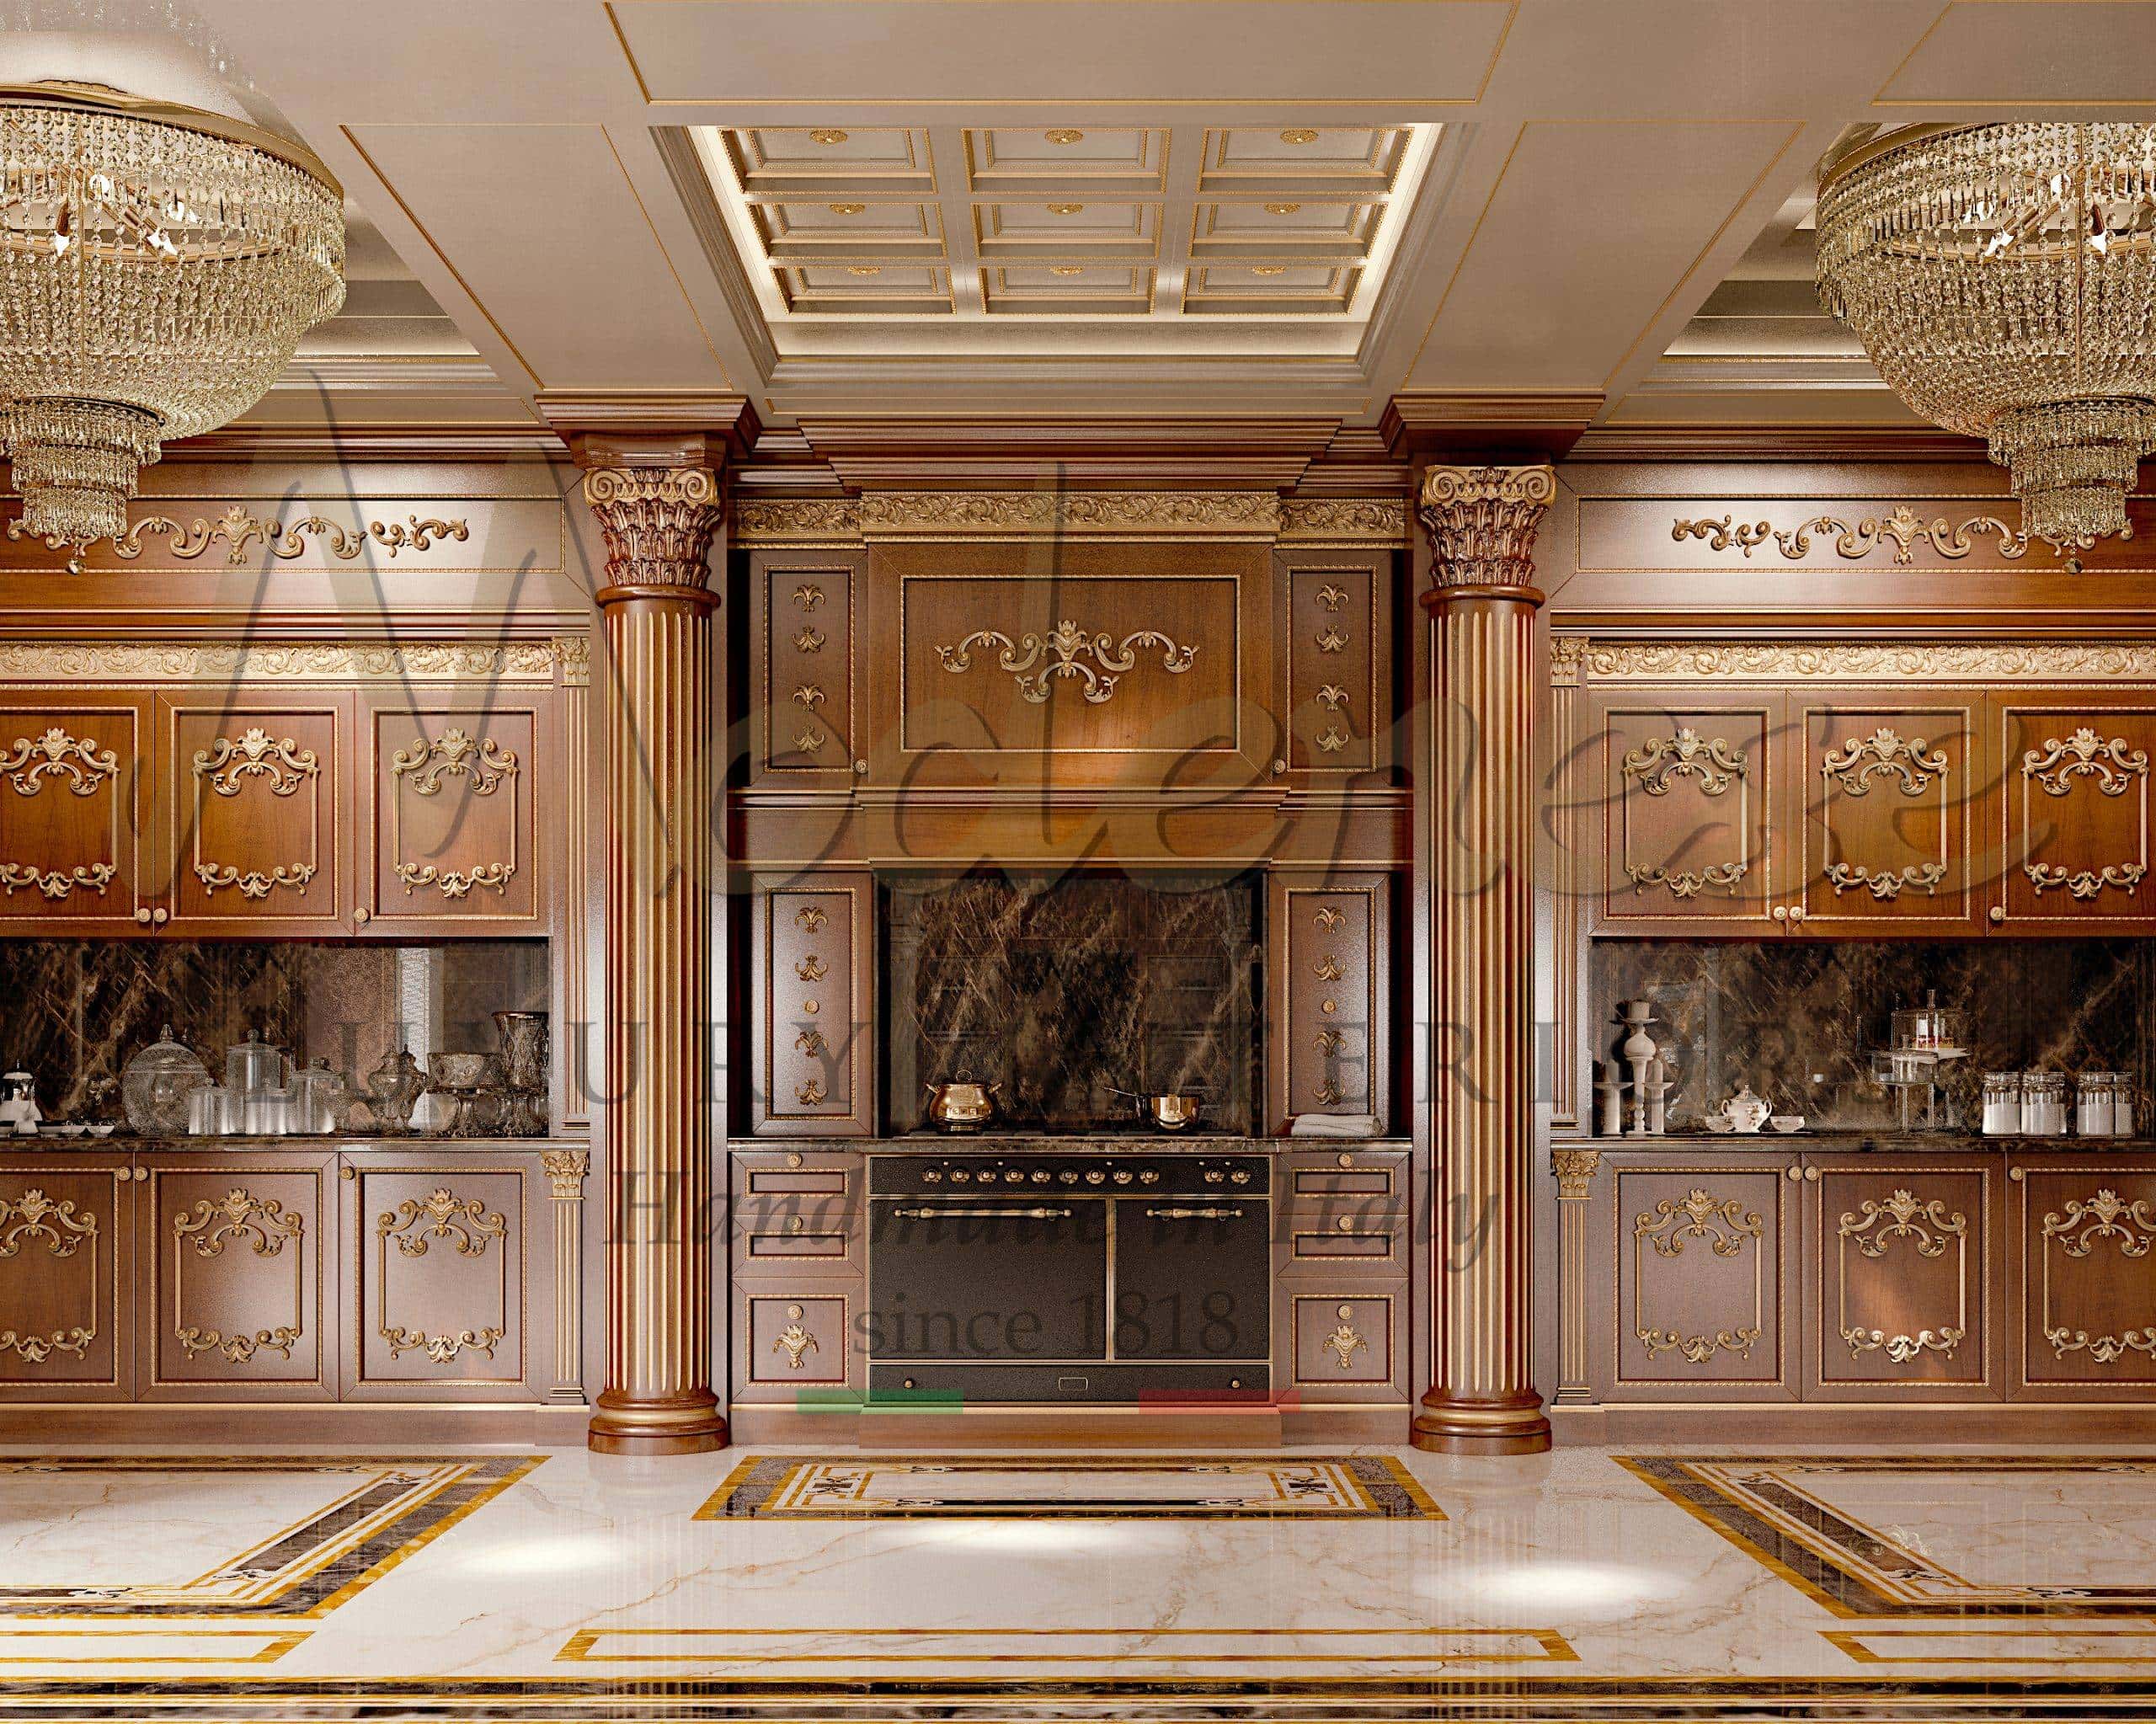 定制室内设计服务厨房项目 皇家经典奢华法式意大利品位意大利手工制作优雅装饰装修独家固定家具